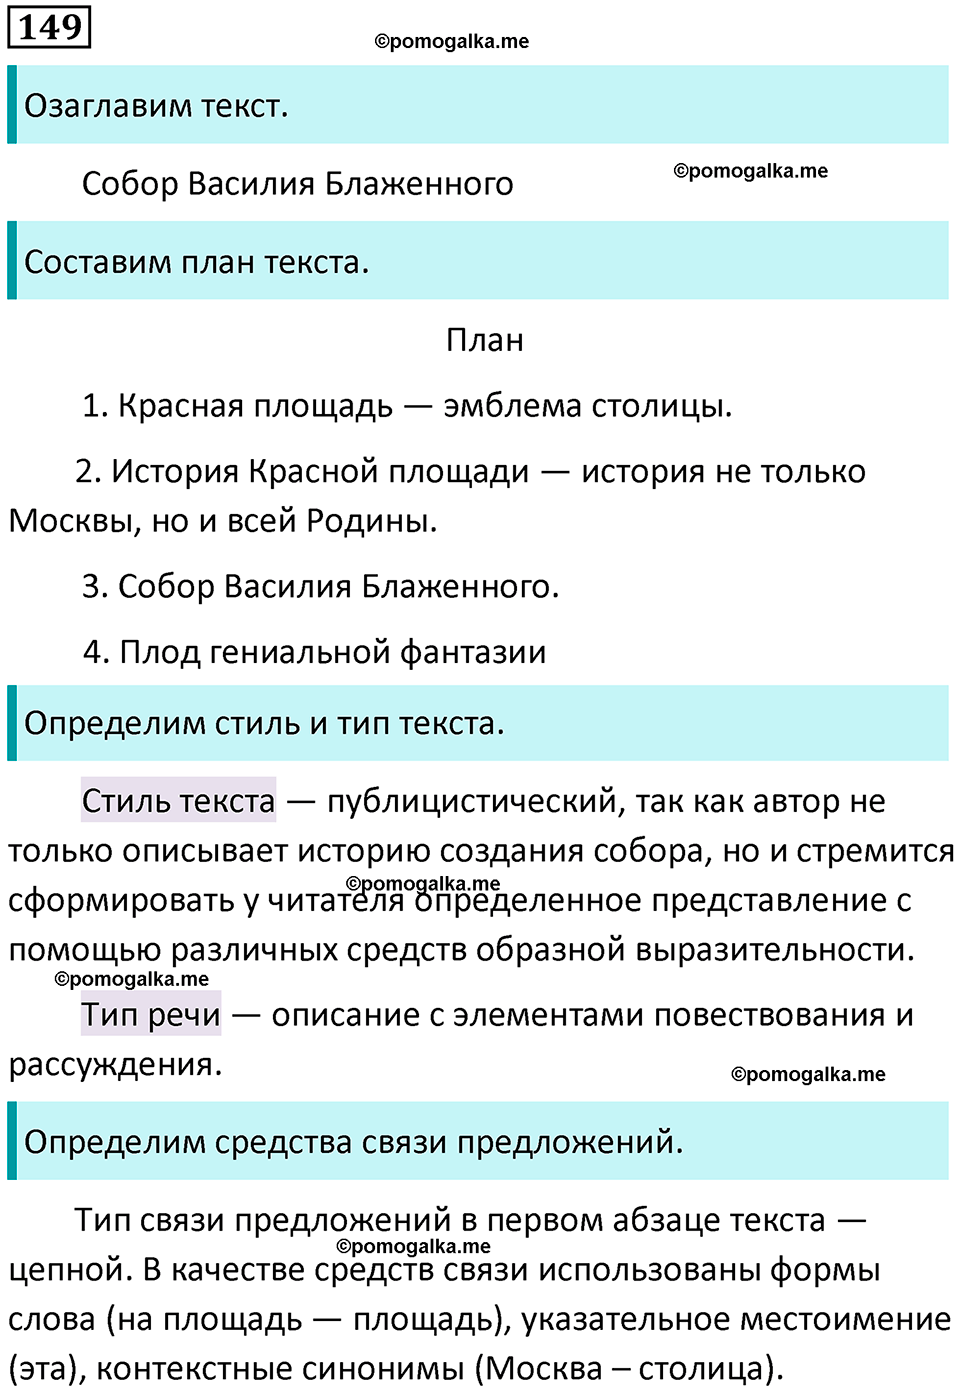 разбор упражнения №149 русский язык 8 класс Бархударов 2023 год